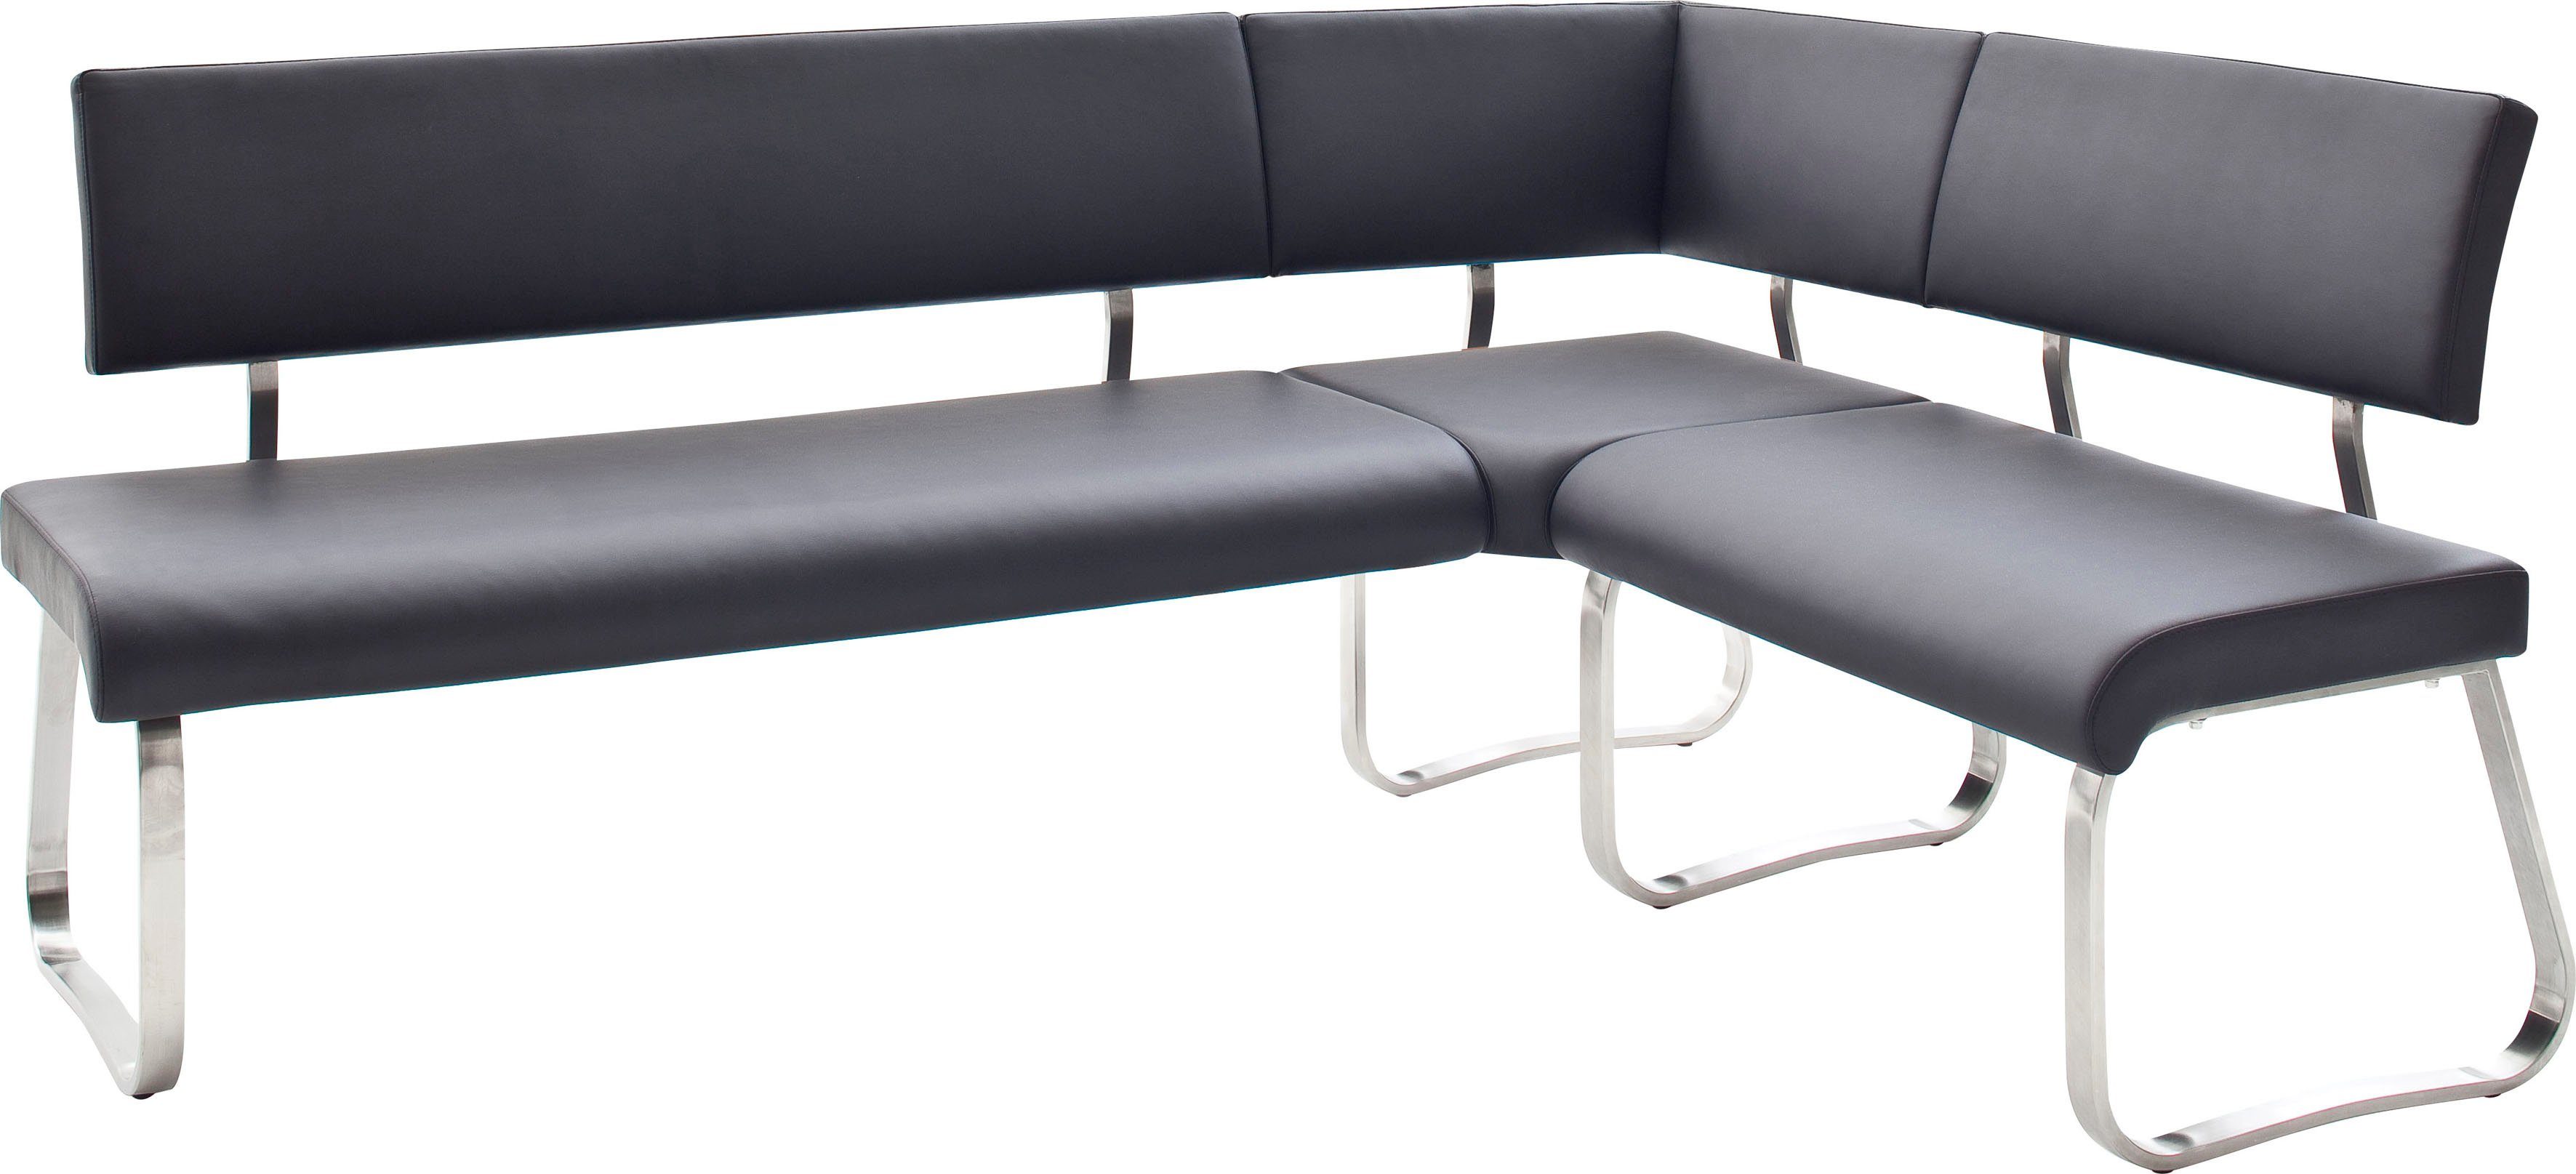 MCA furniture Eckbank Arco, Eckbank frei im Raum stellbar, Breite 200 cm, belastbar bis 500 kg Schwarz | Eckbänke